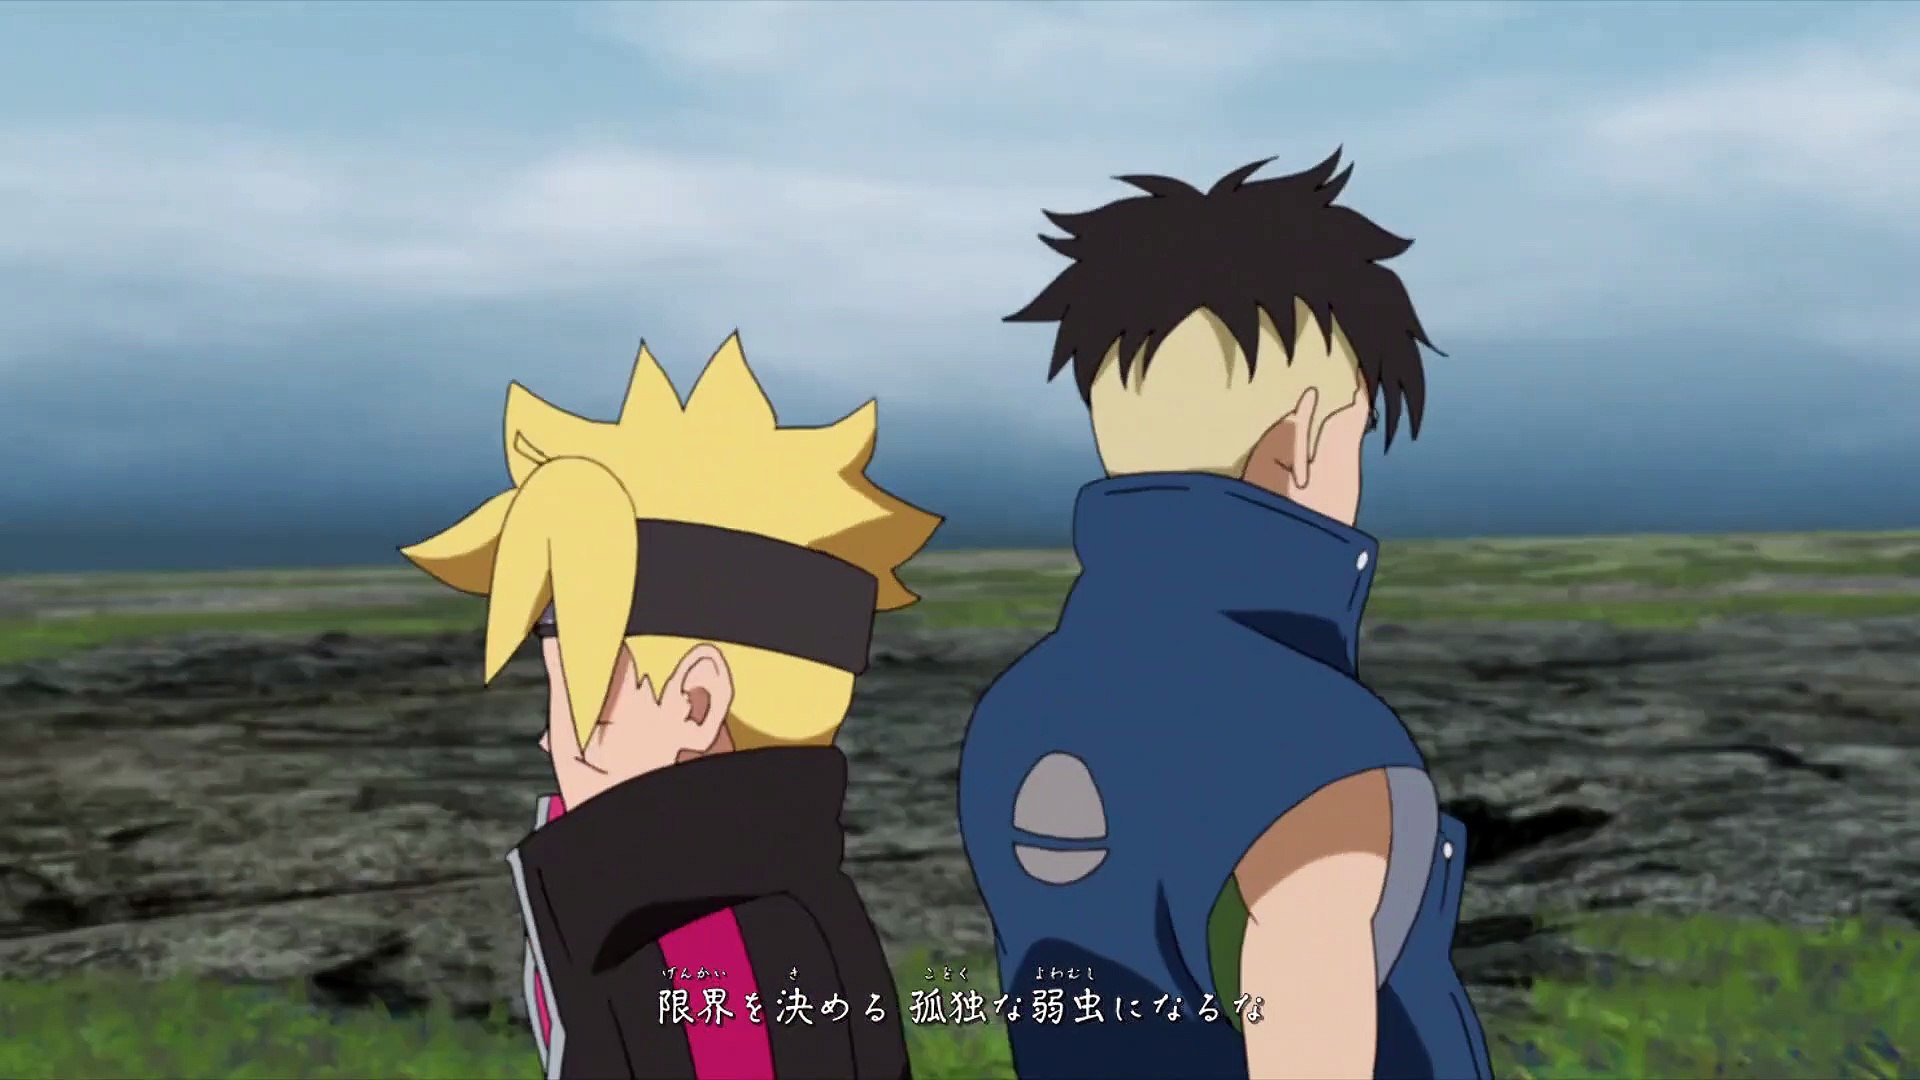 213 boruto episode 'Boruto: Naruto